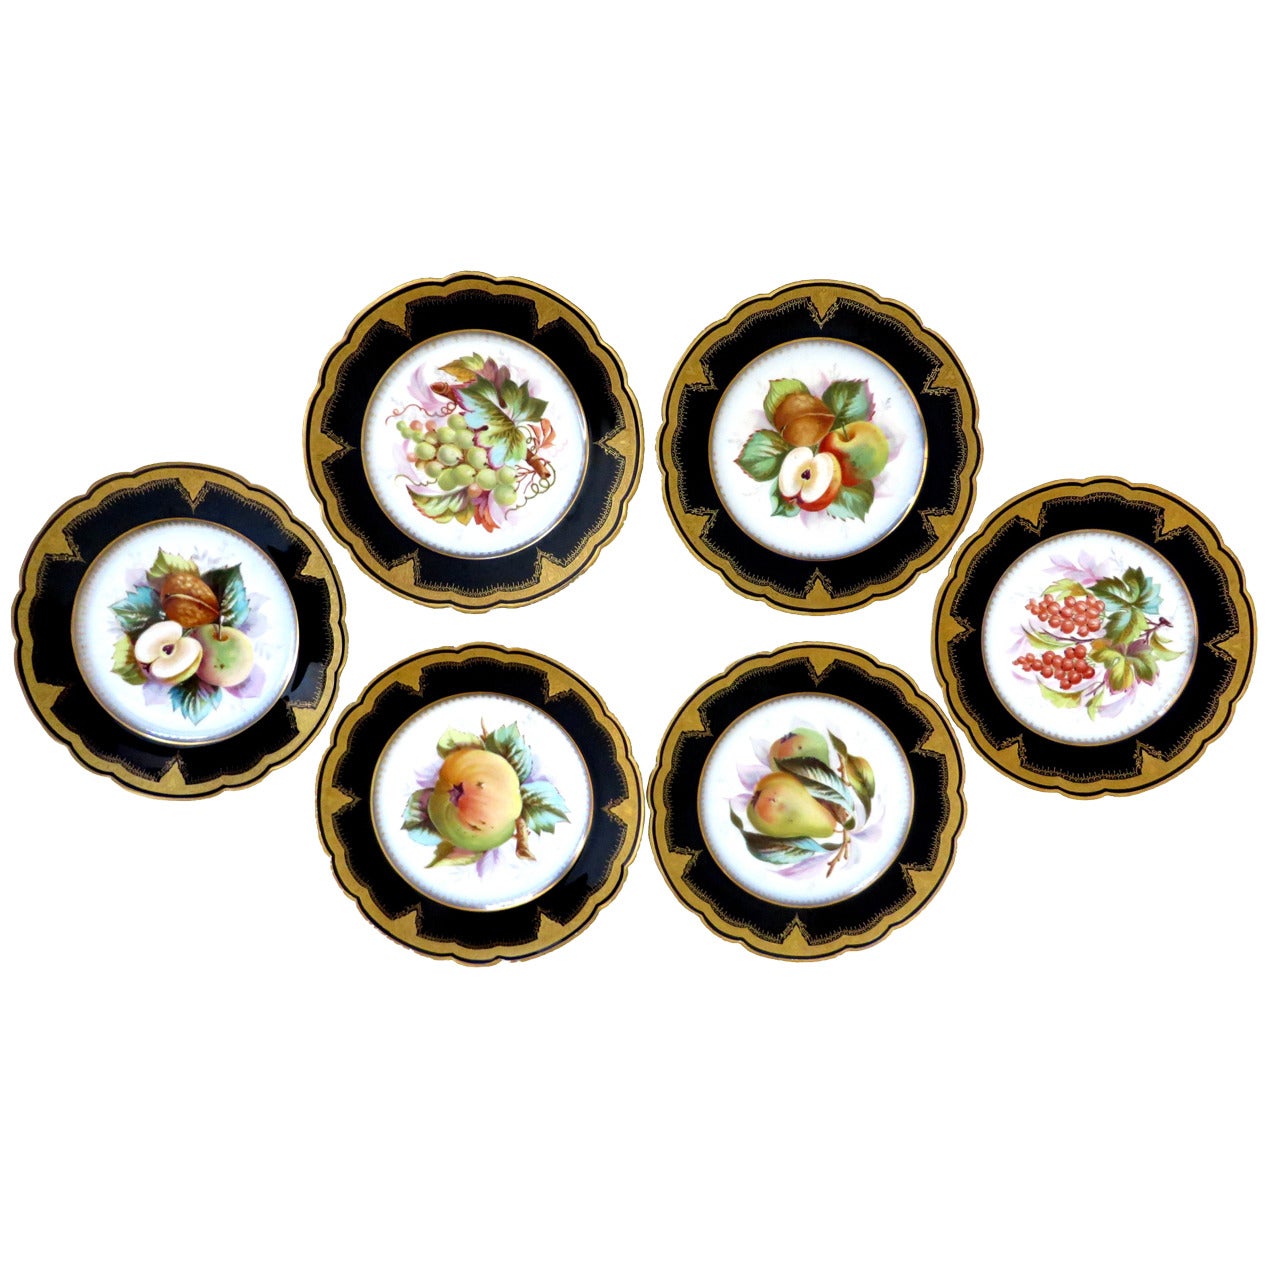 Porcelain Plates with Fruit Motifs